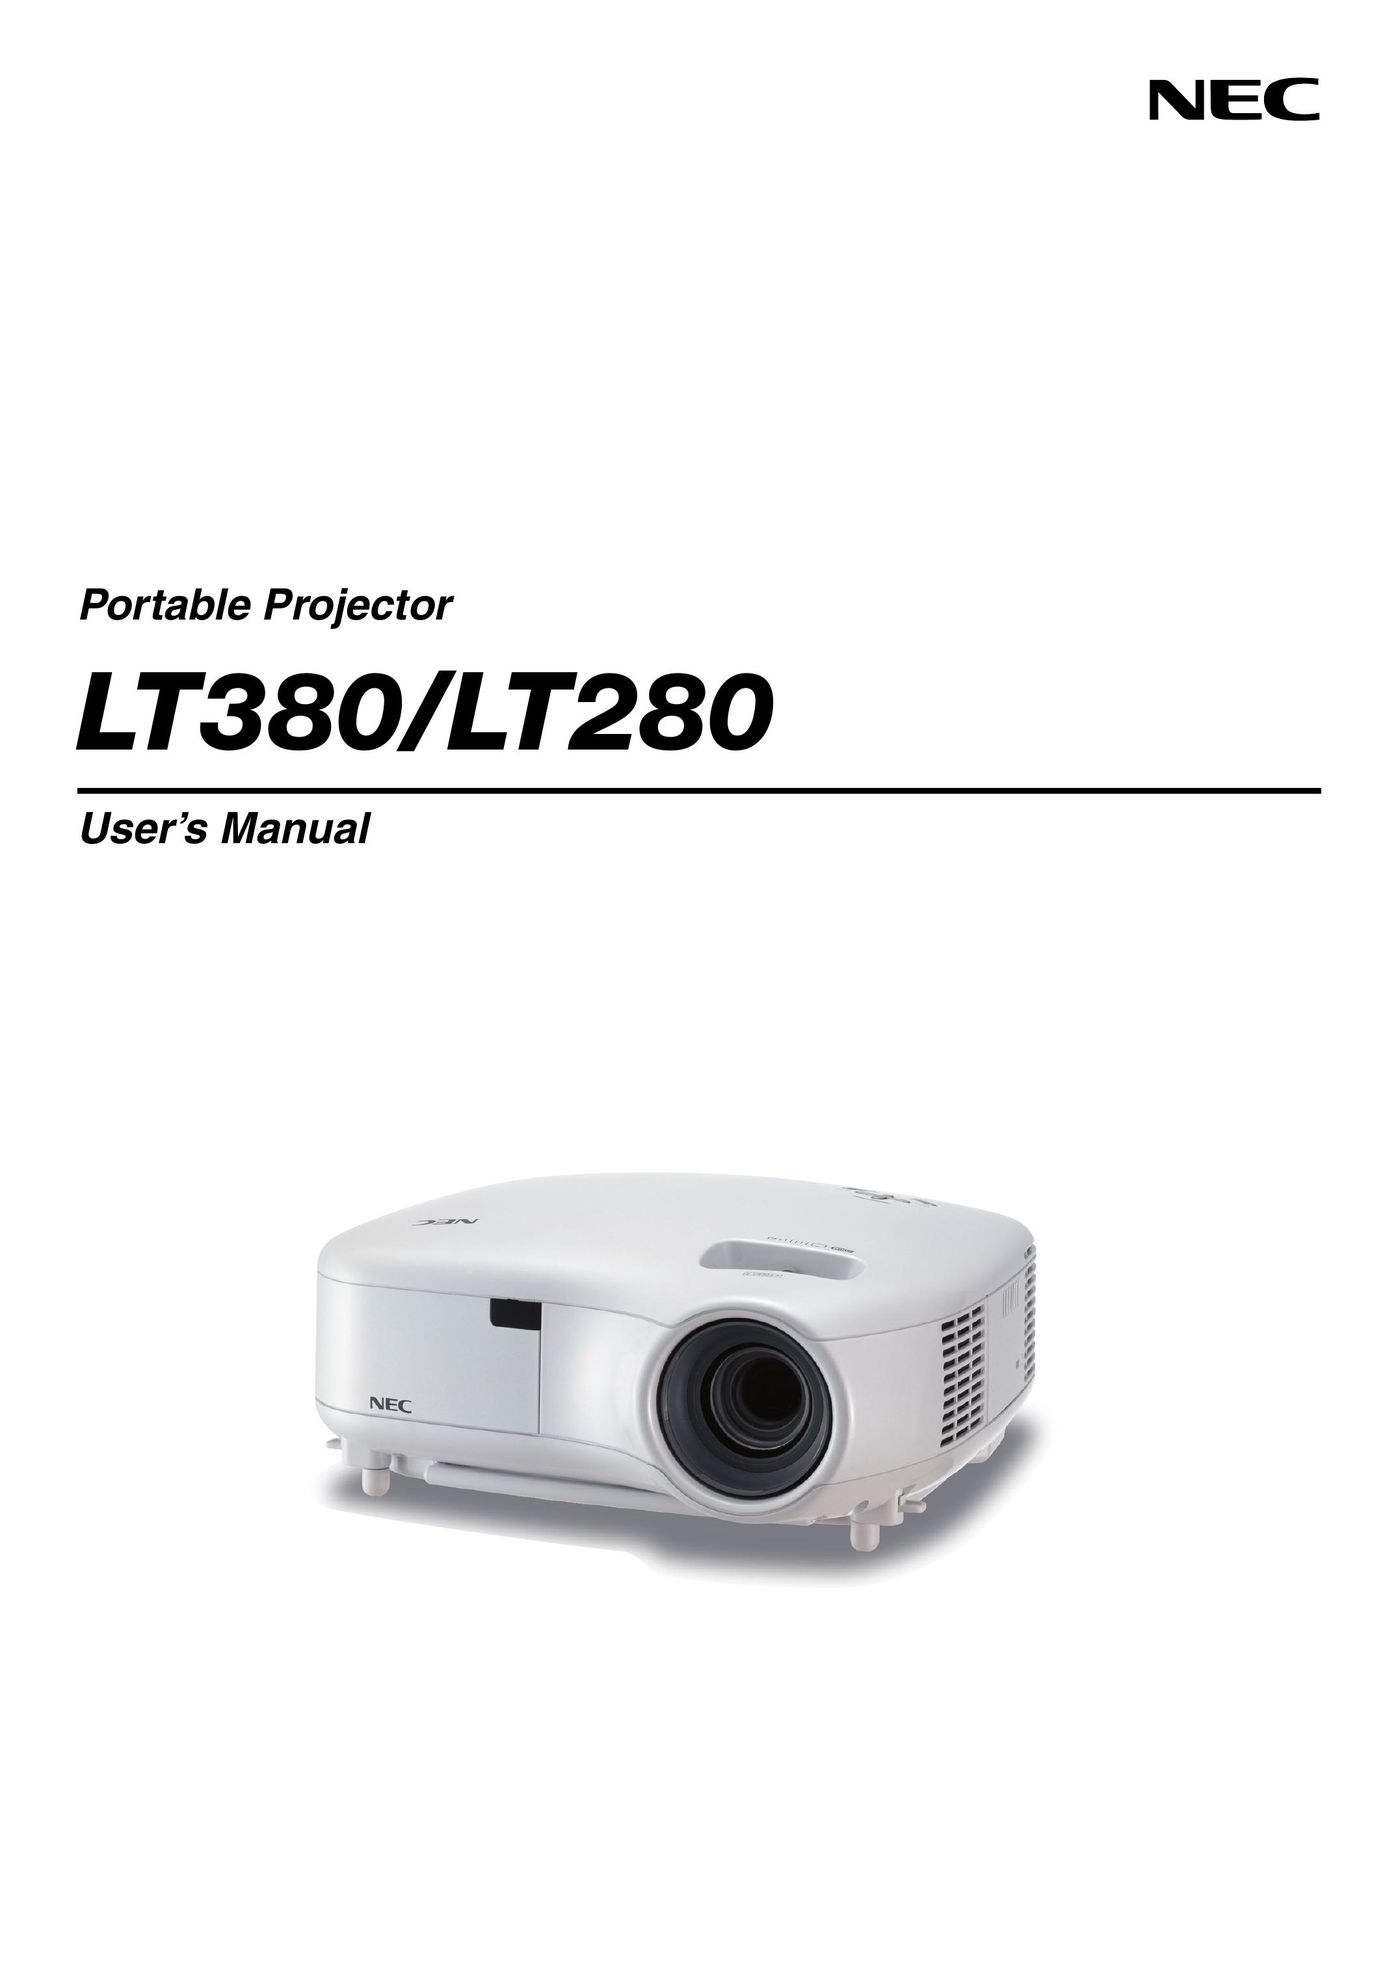 NEC LT380 Projector User Manual